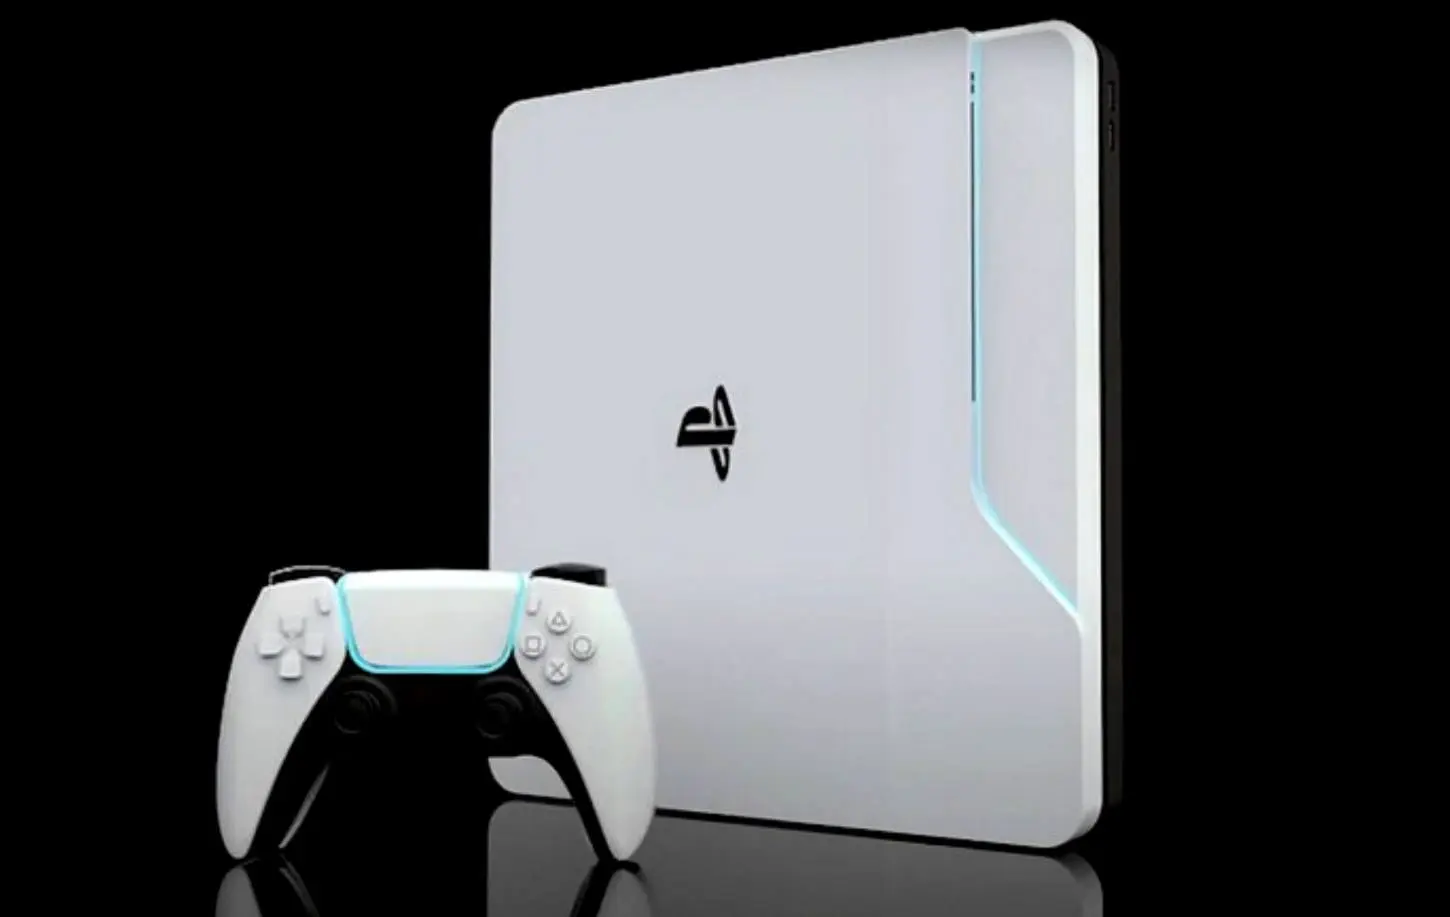 Stirre fange sejle PlayStation 5 lancering udsat (opd) | Leifshows